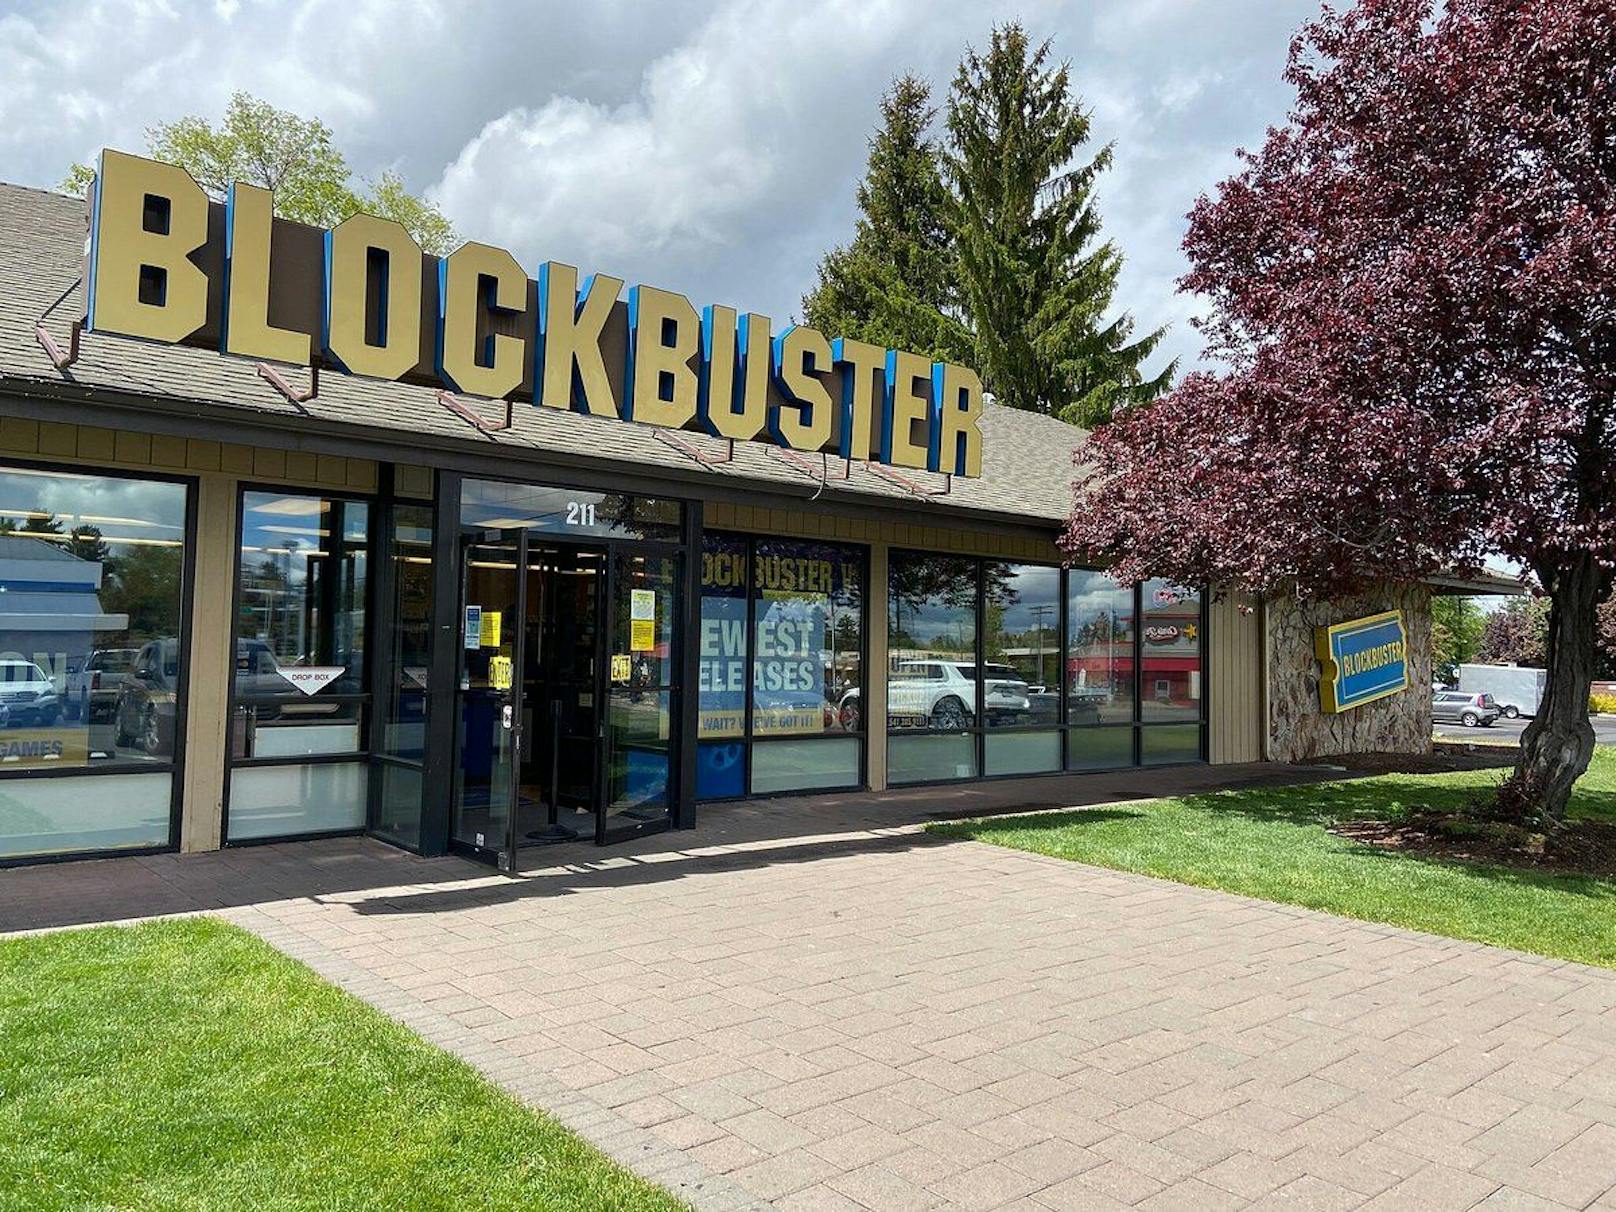 Die letzte verbliebene Blockbuster-Filiale in Bend, Oregon. Alle anderen 8.000 Filialen des einst größten Videoverleihgeschäfts sind verschwunden.